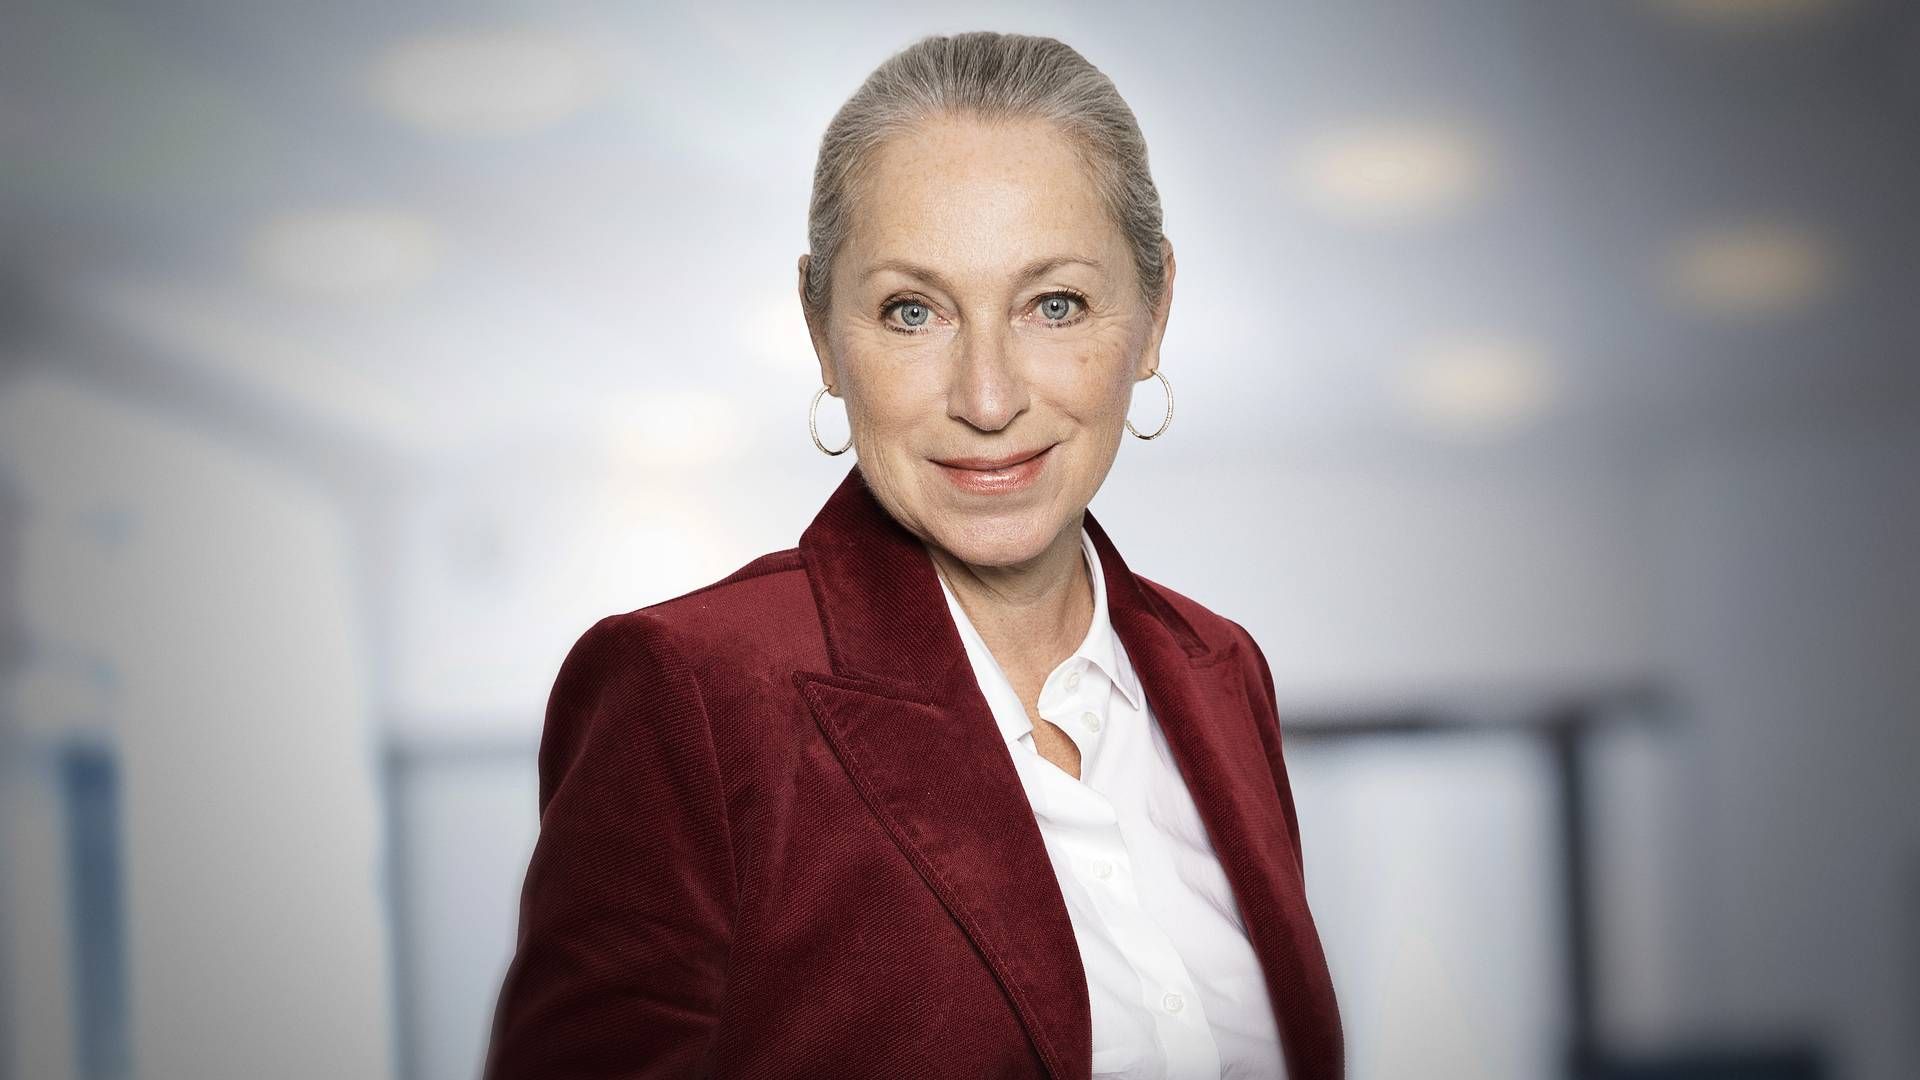 Forbrugerøkonom i Sydbank, Ann Lehmann Erichsen, ser det som et spark fremad, at danskerne i stigende grad tjekker deres pensionsopsparing. | Foto: Sydbank Pr